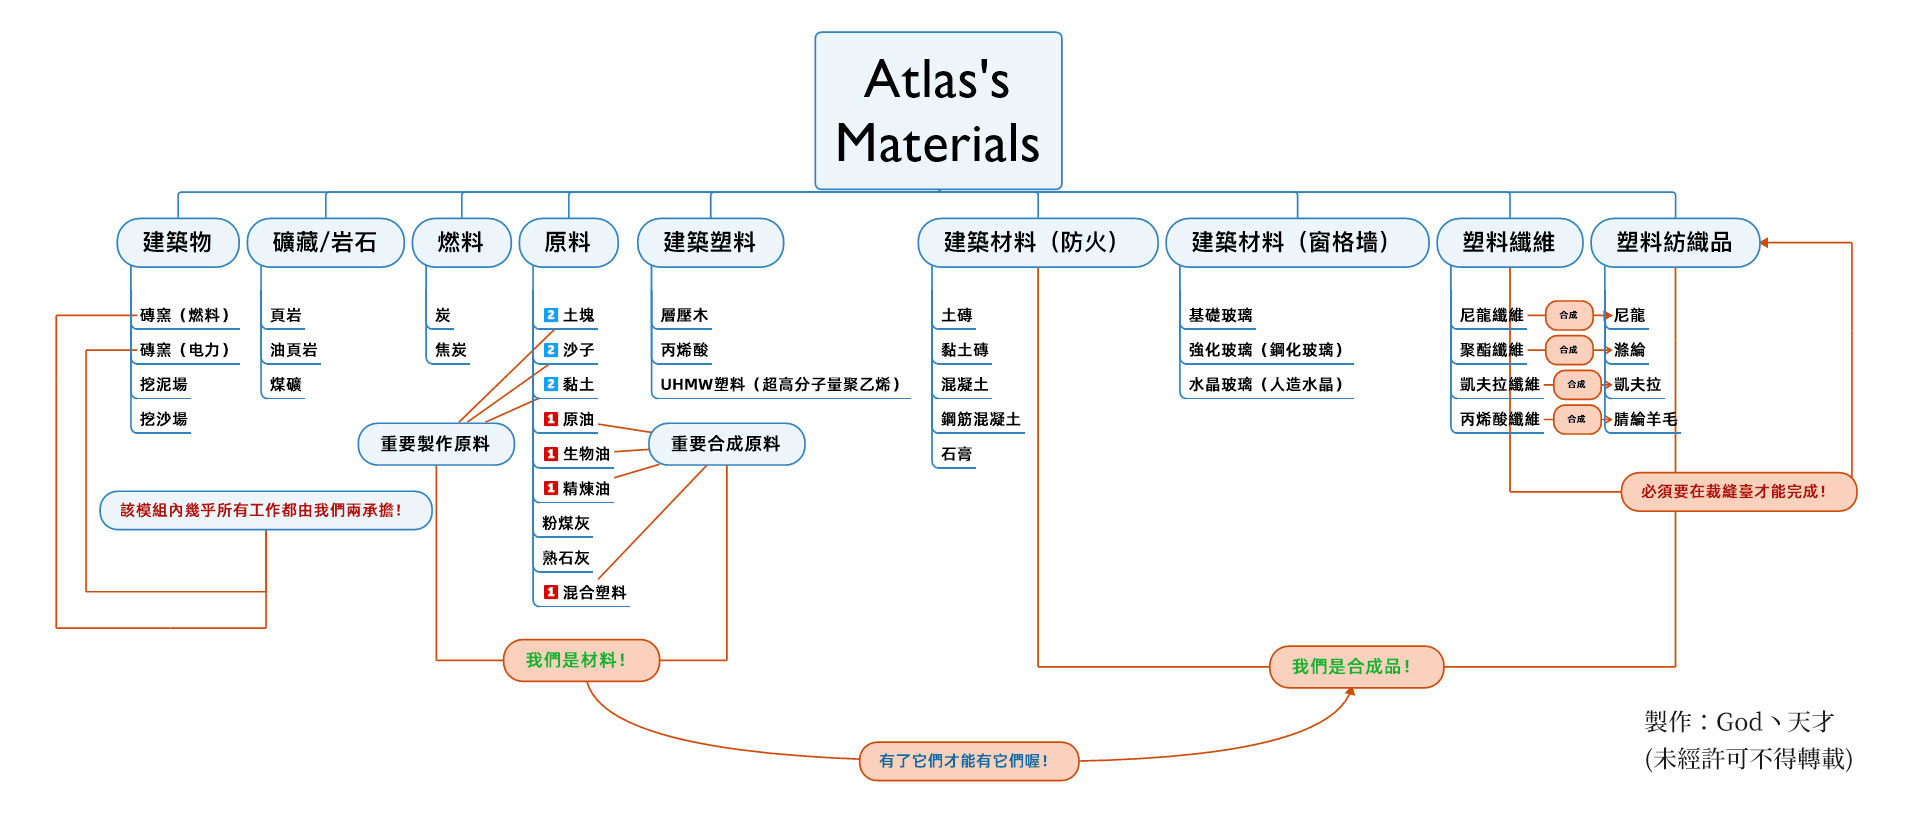 Atlas' Materials